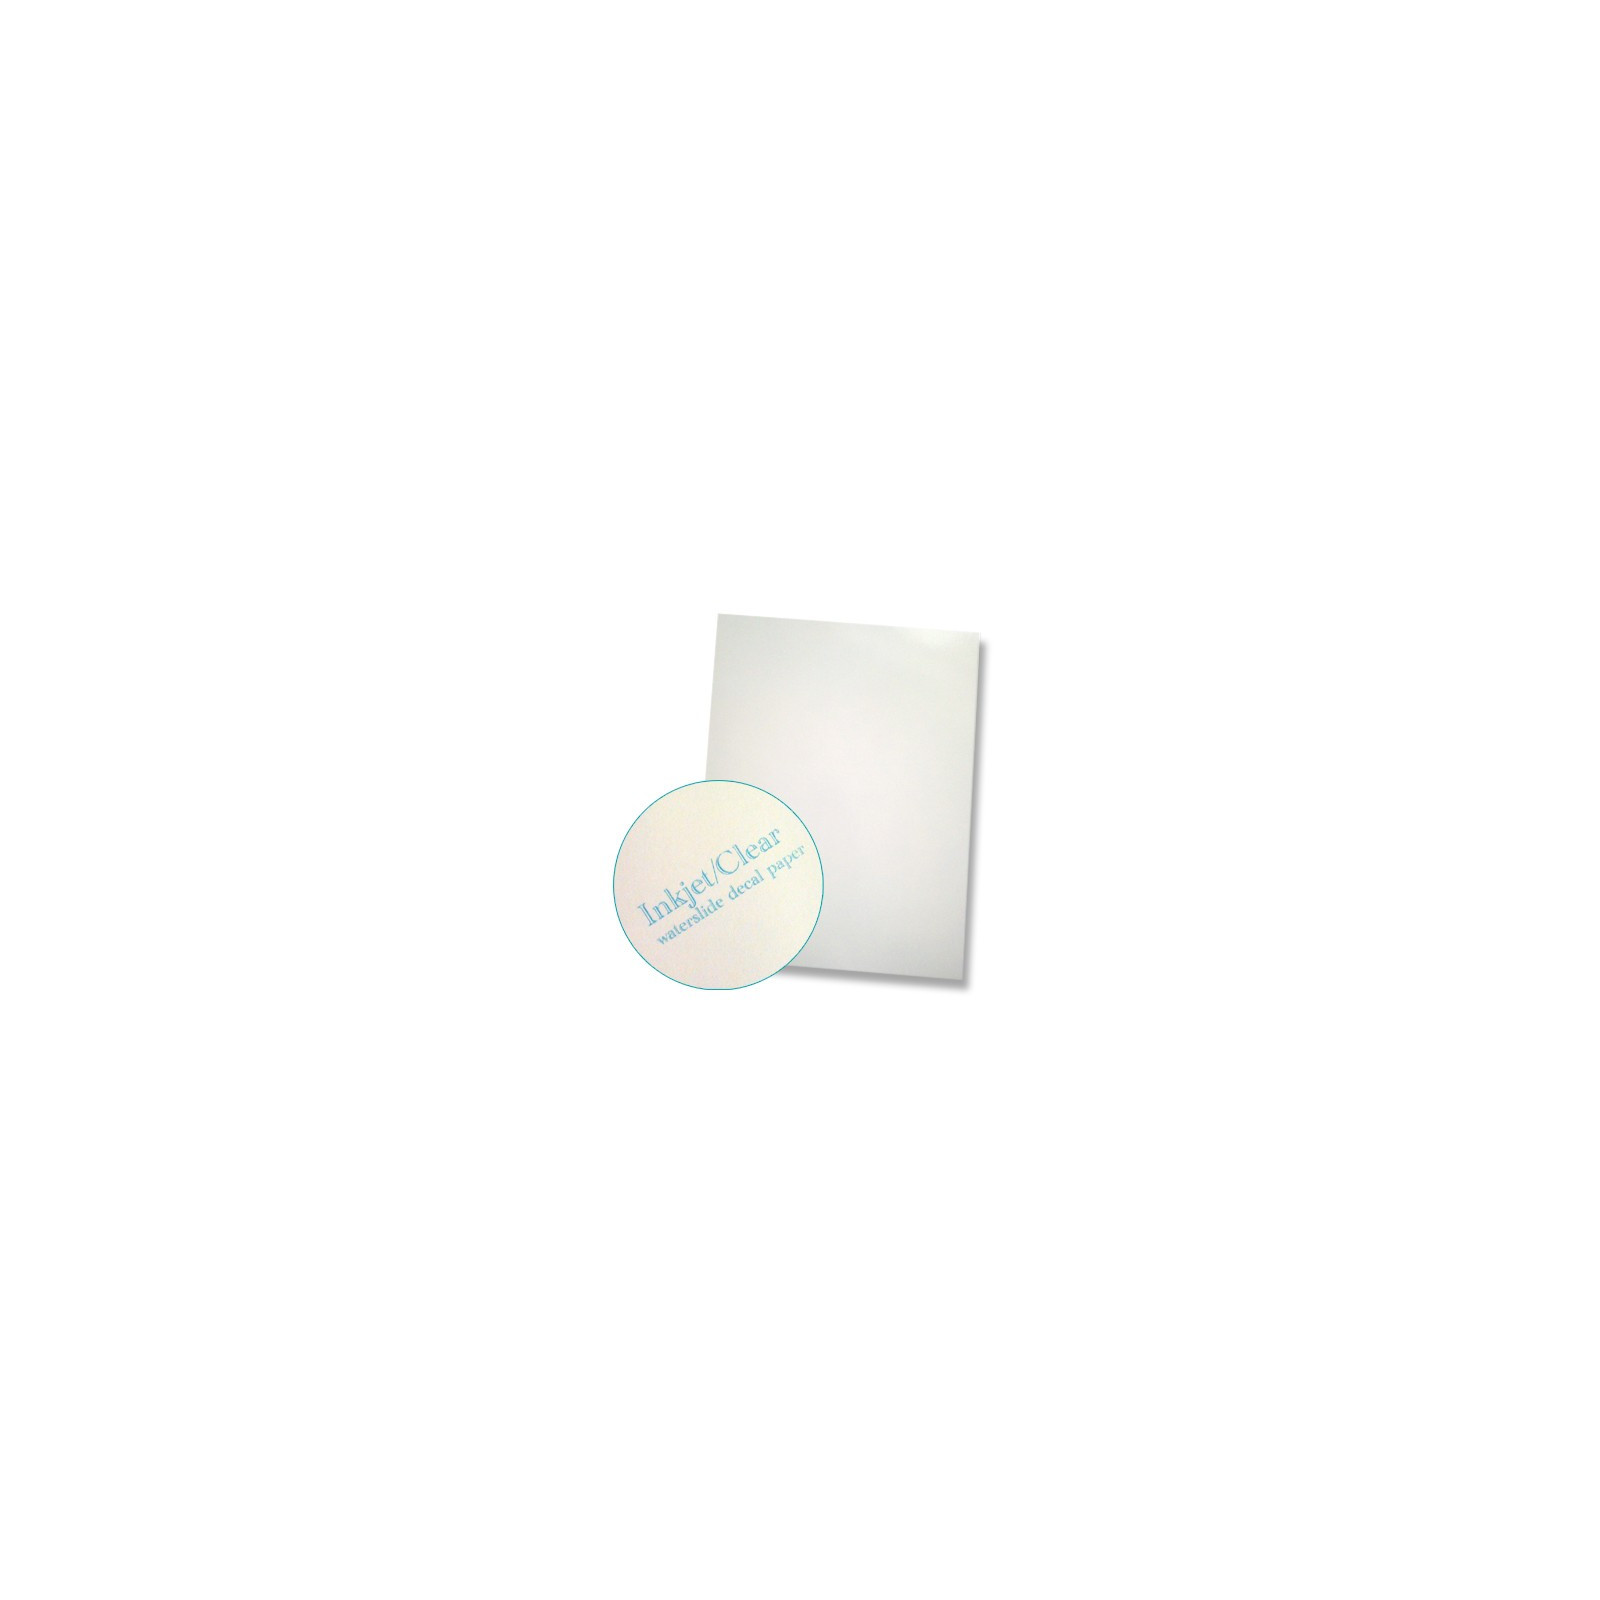 Feuille decalques vierge, fond blanc jet d'encre, 1 feuille - Francis  Miniatures